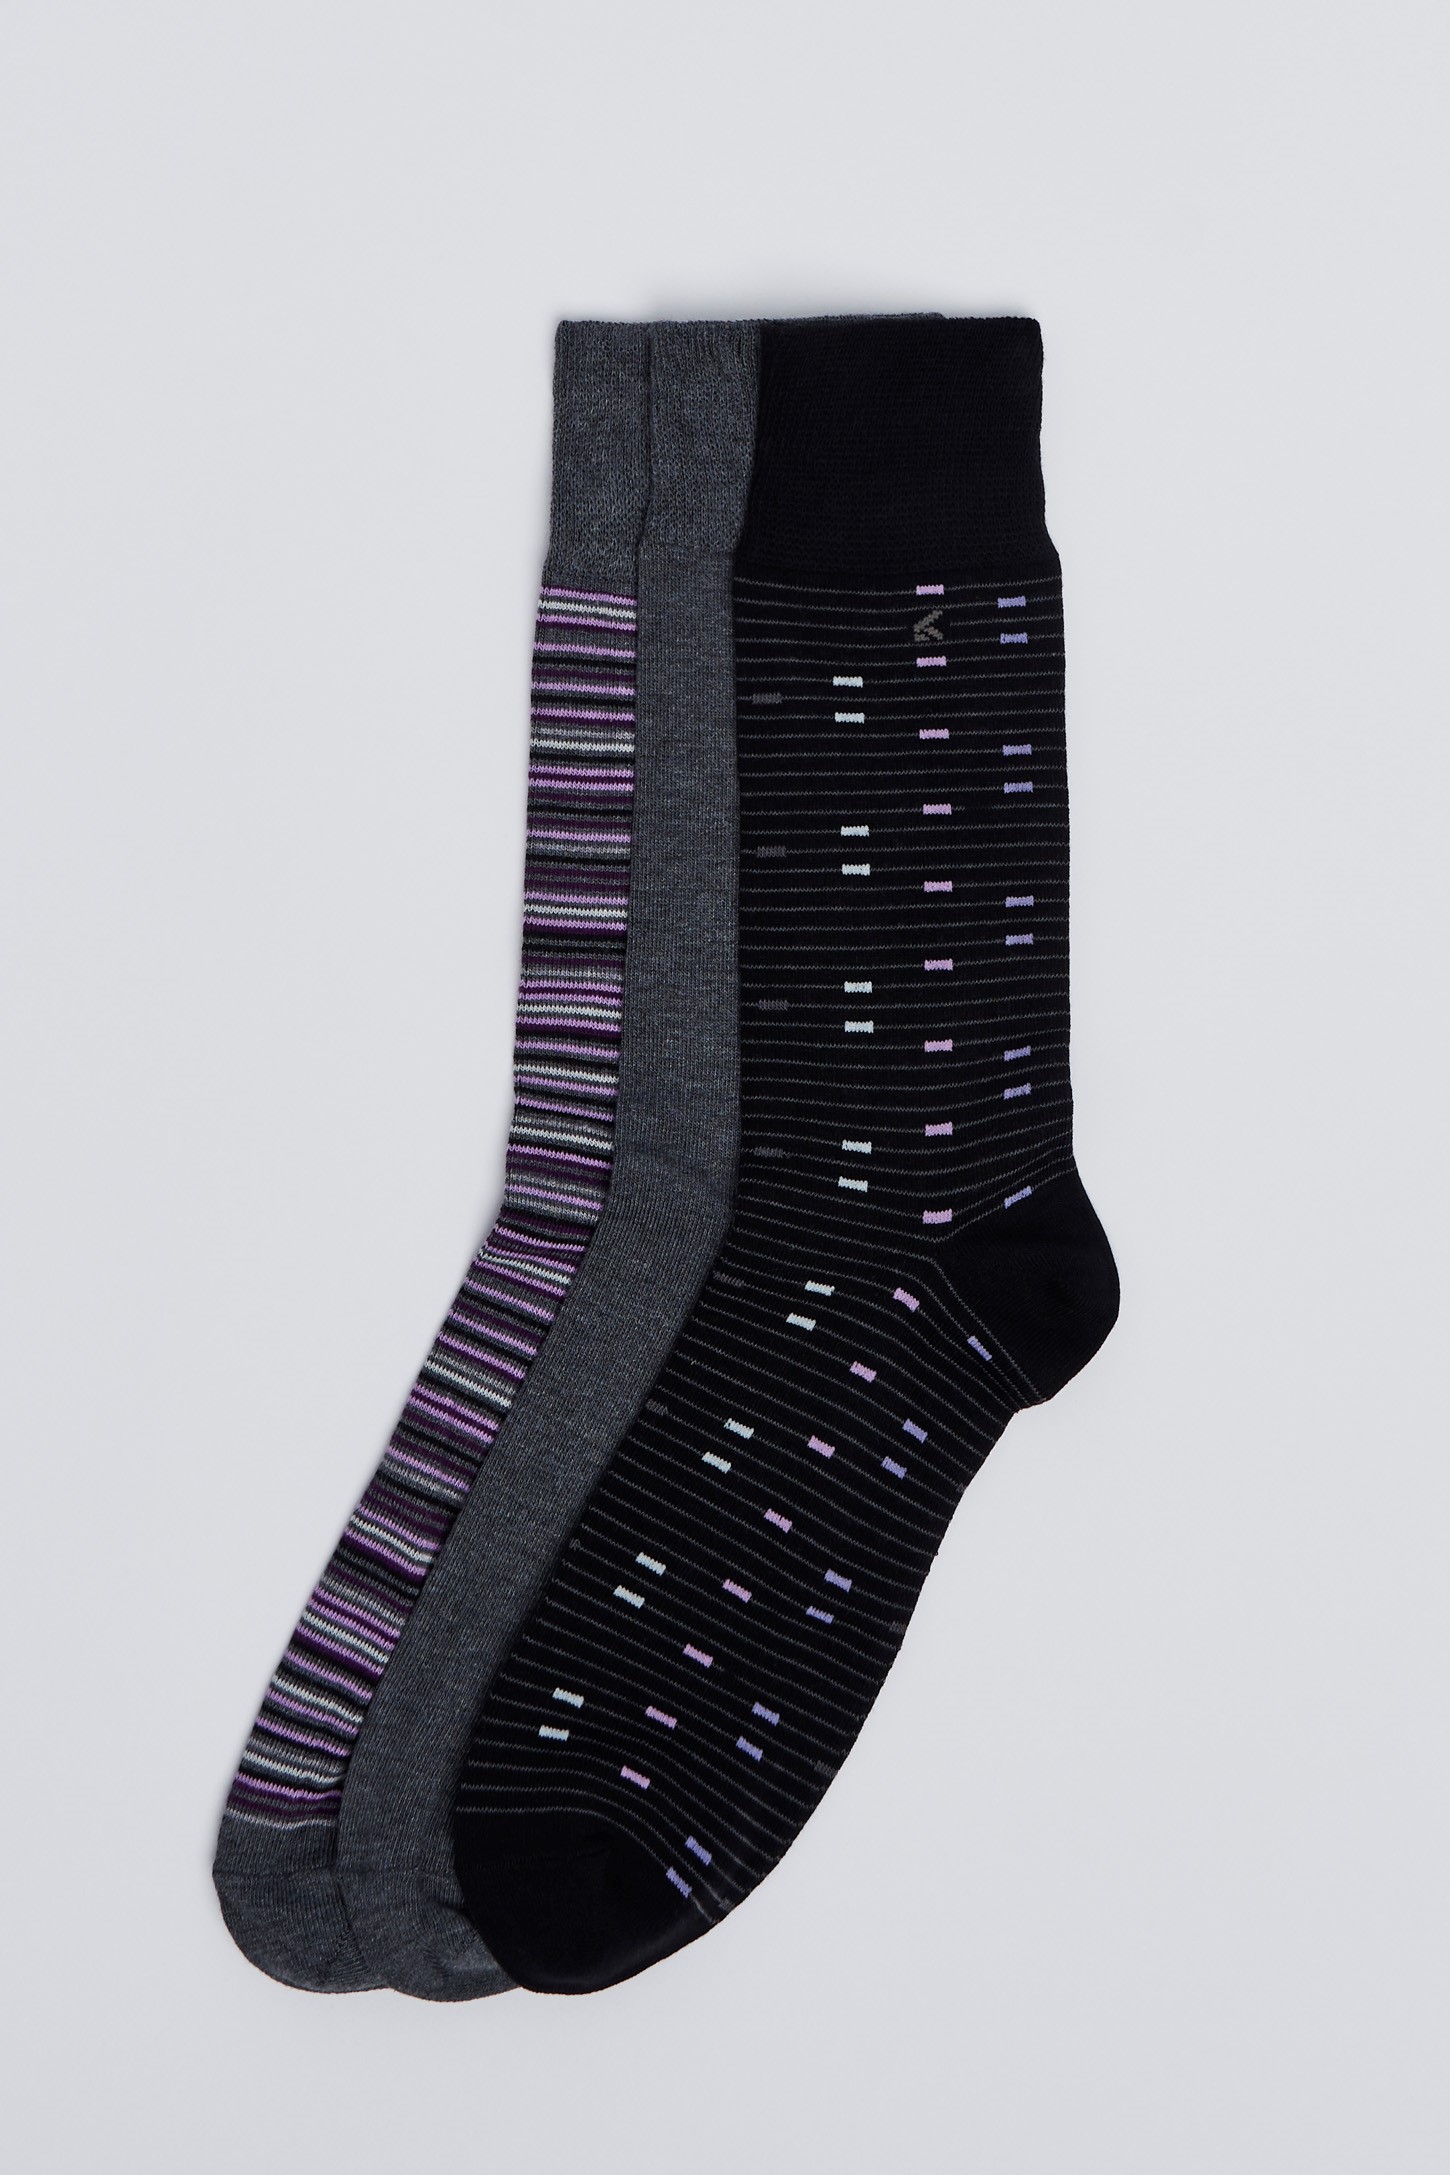 Chaussettes en fibre de bambou BASII Paquet de 3 paires de chaussettes de luxe unisexes très douces Respirant Noir, 40-46 UK 